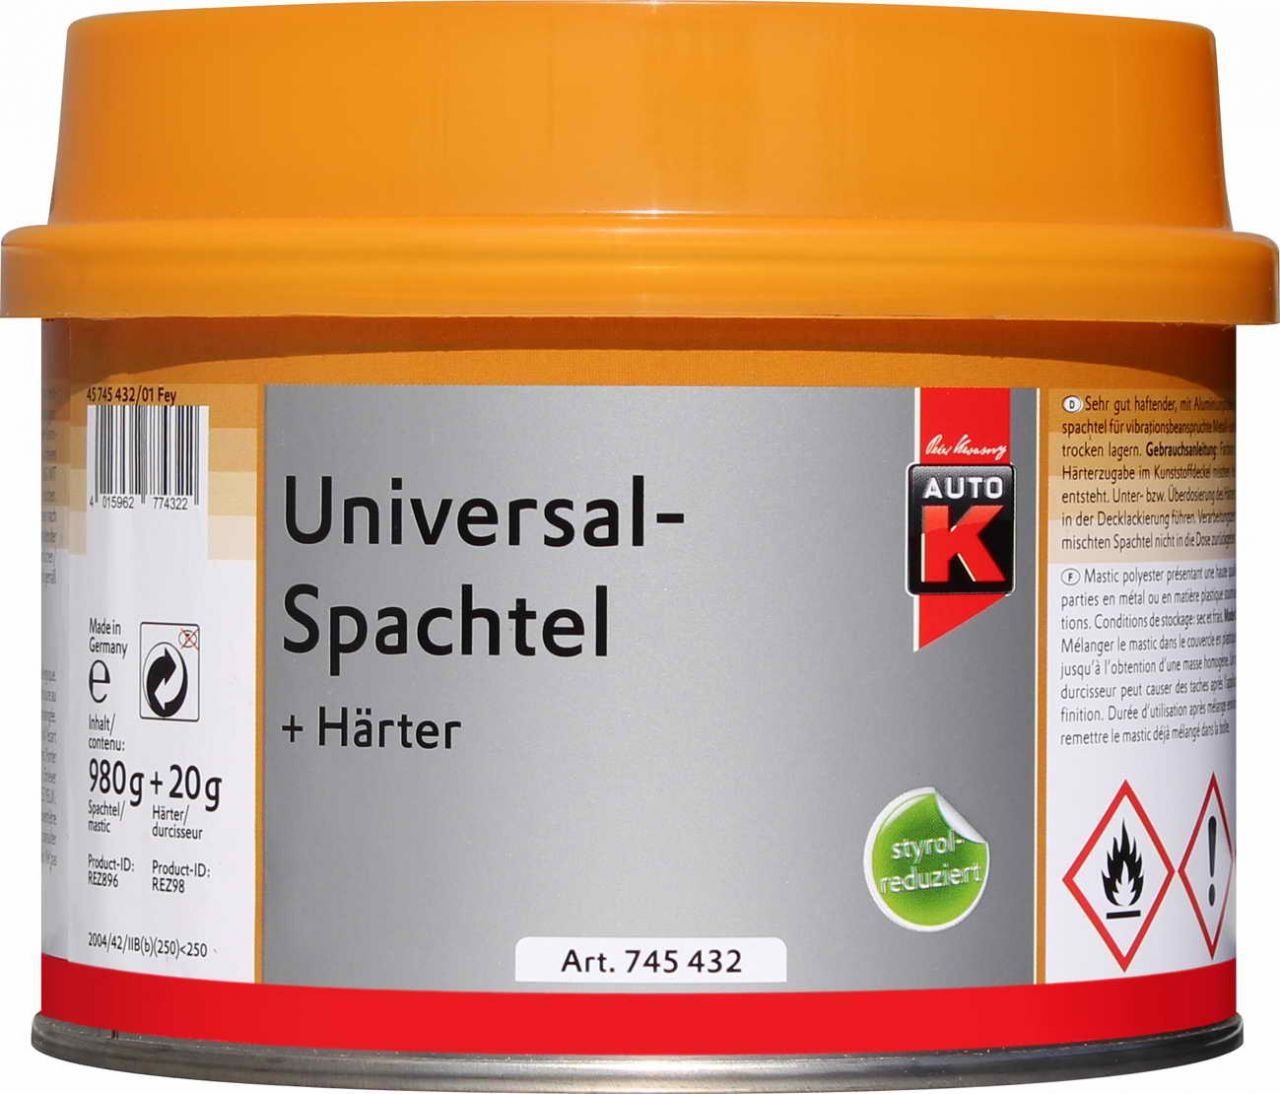 Auto-K Breitspachtel Auto-K Universalspachtel + Härter 1000g von Auto-K